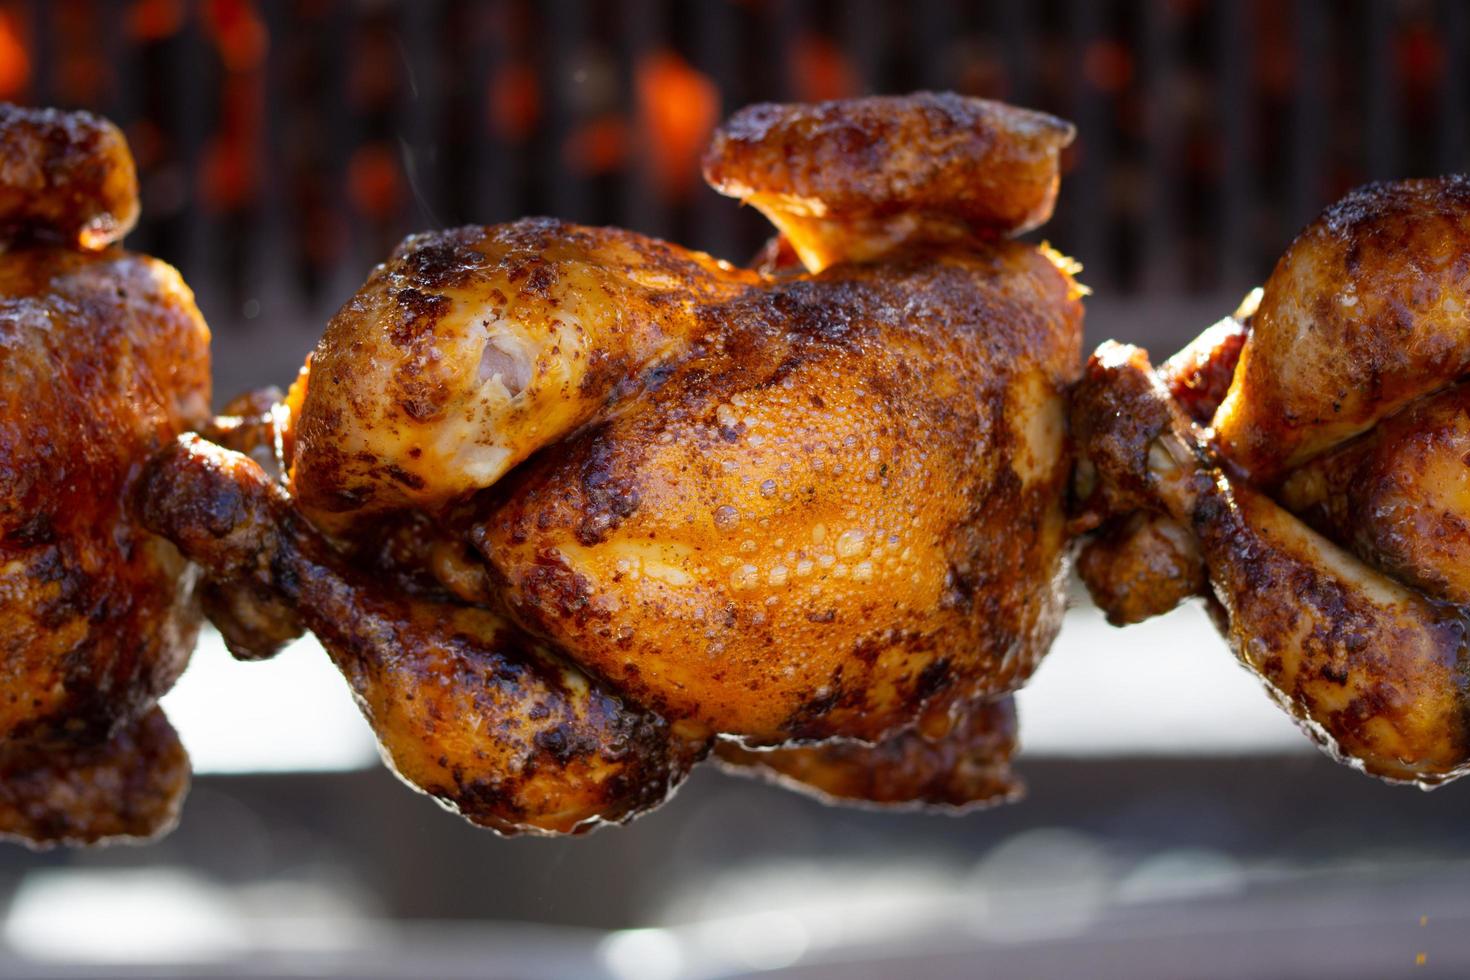 poulets rôtis à la broche grillés au feu d'un grand barbecue photo